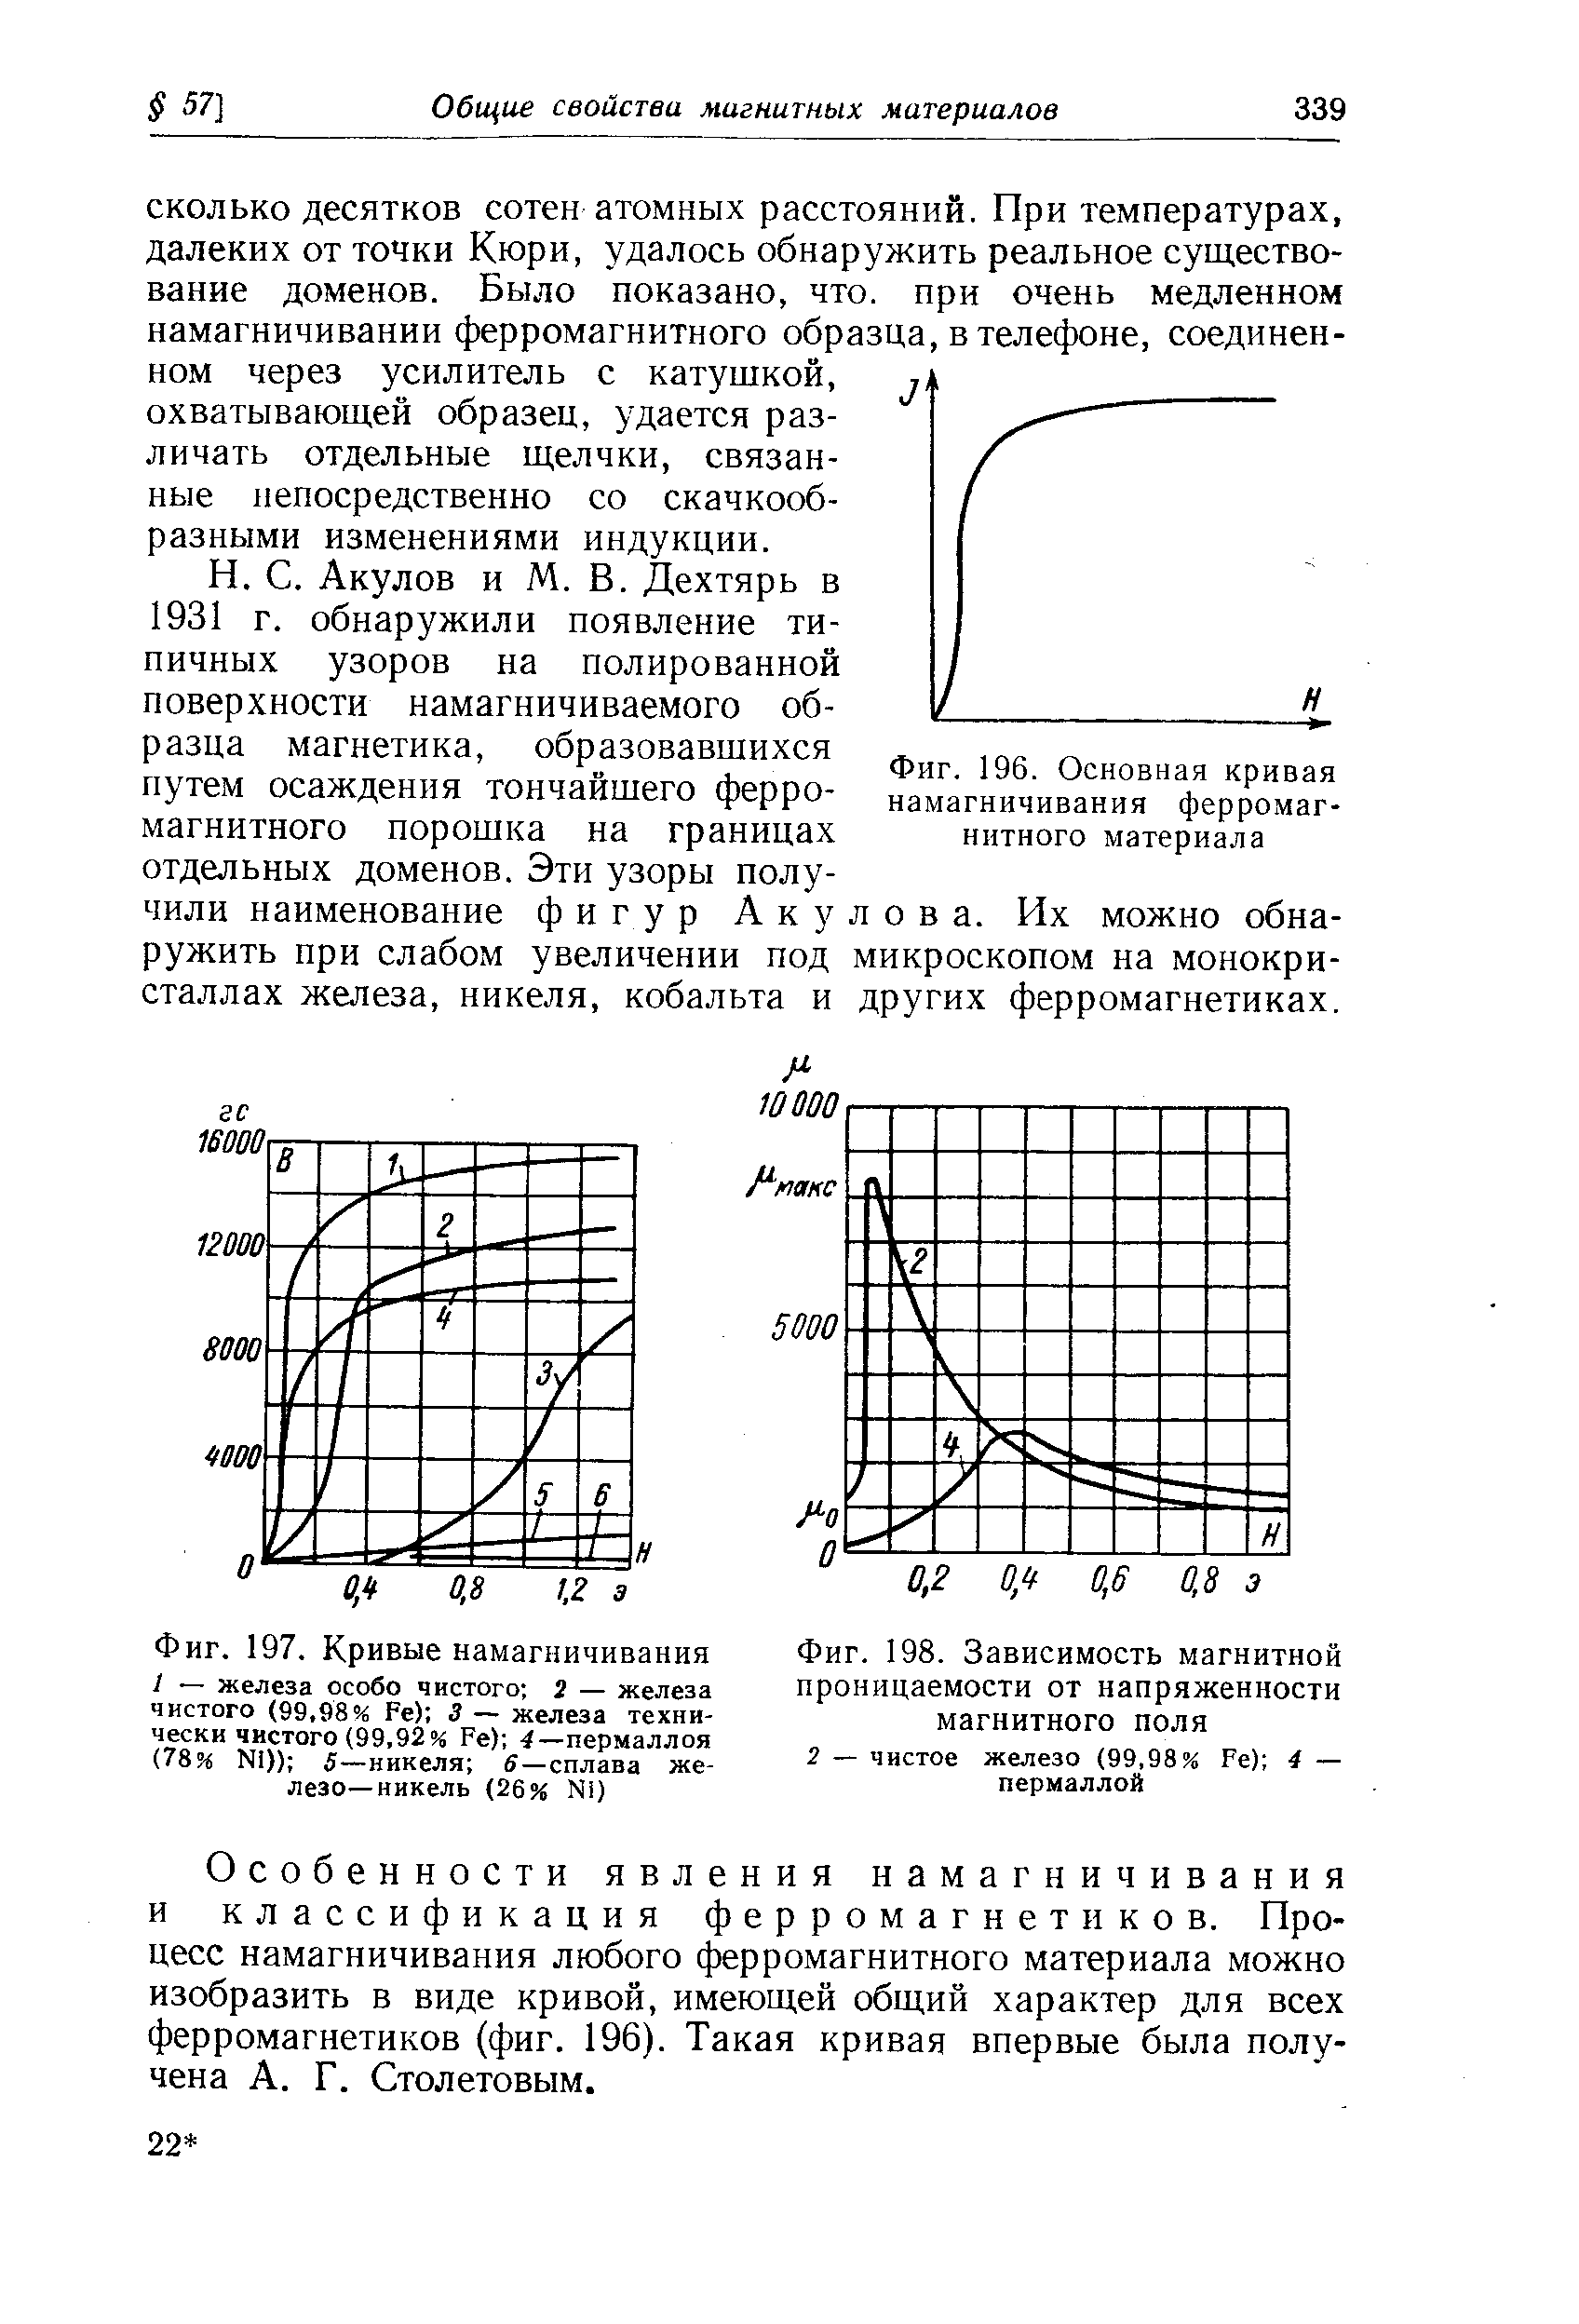 Фиг. 196. Основная кривая намагничивания ферромагнитного материала
